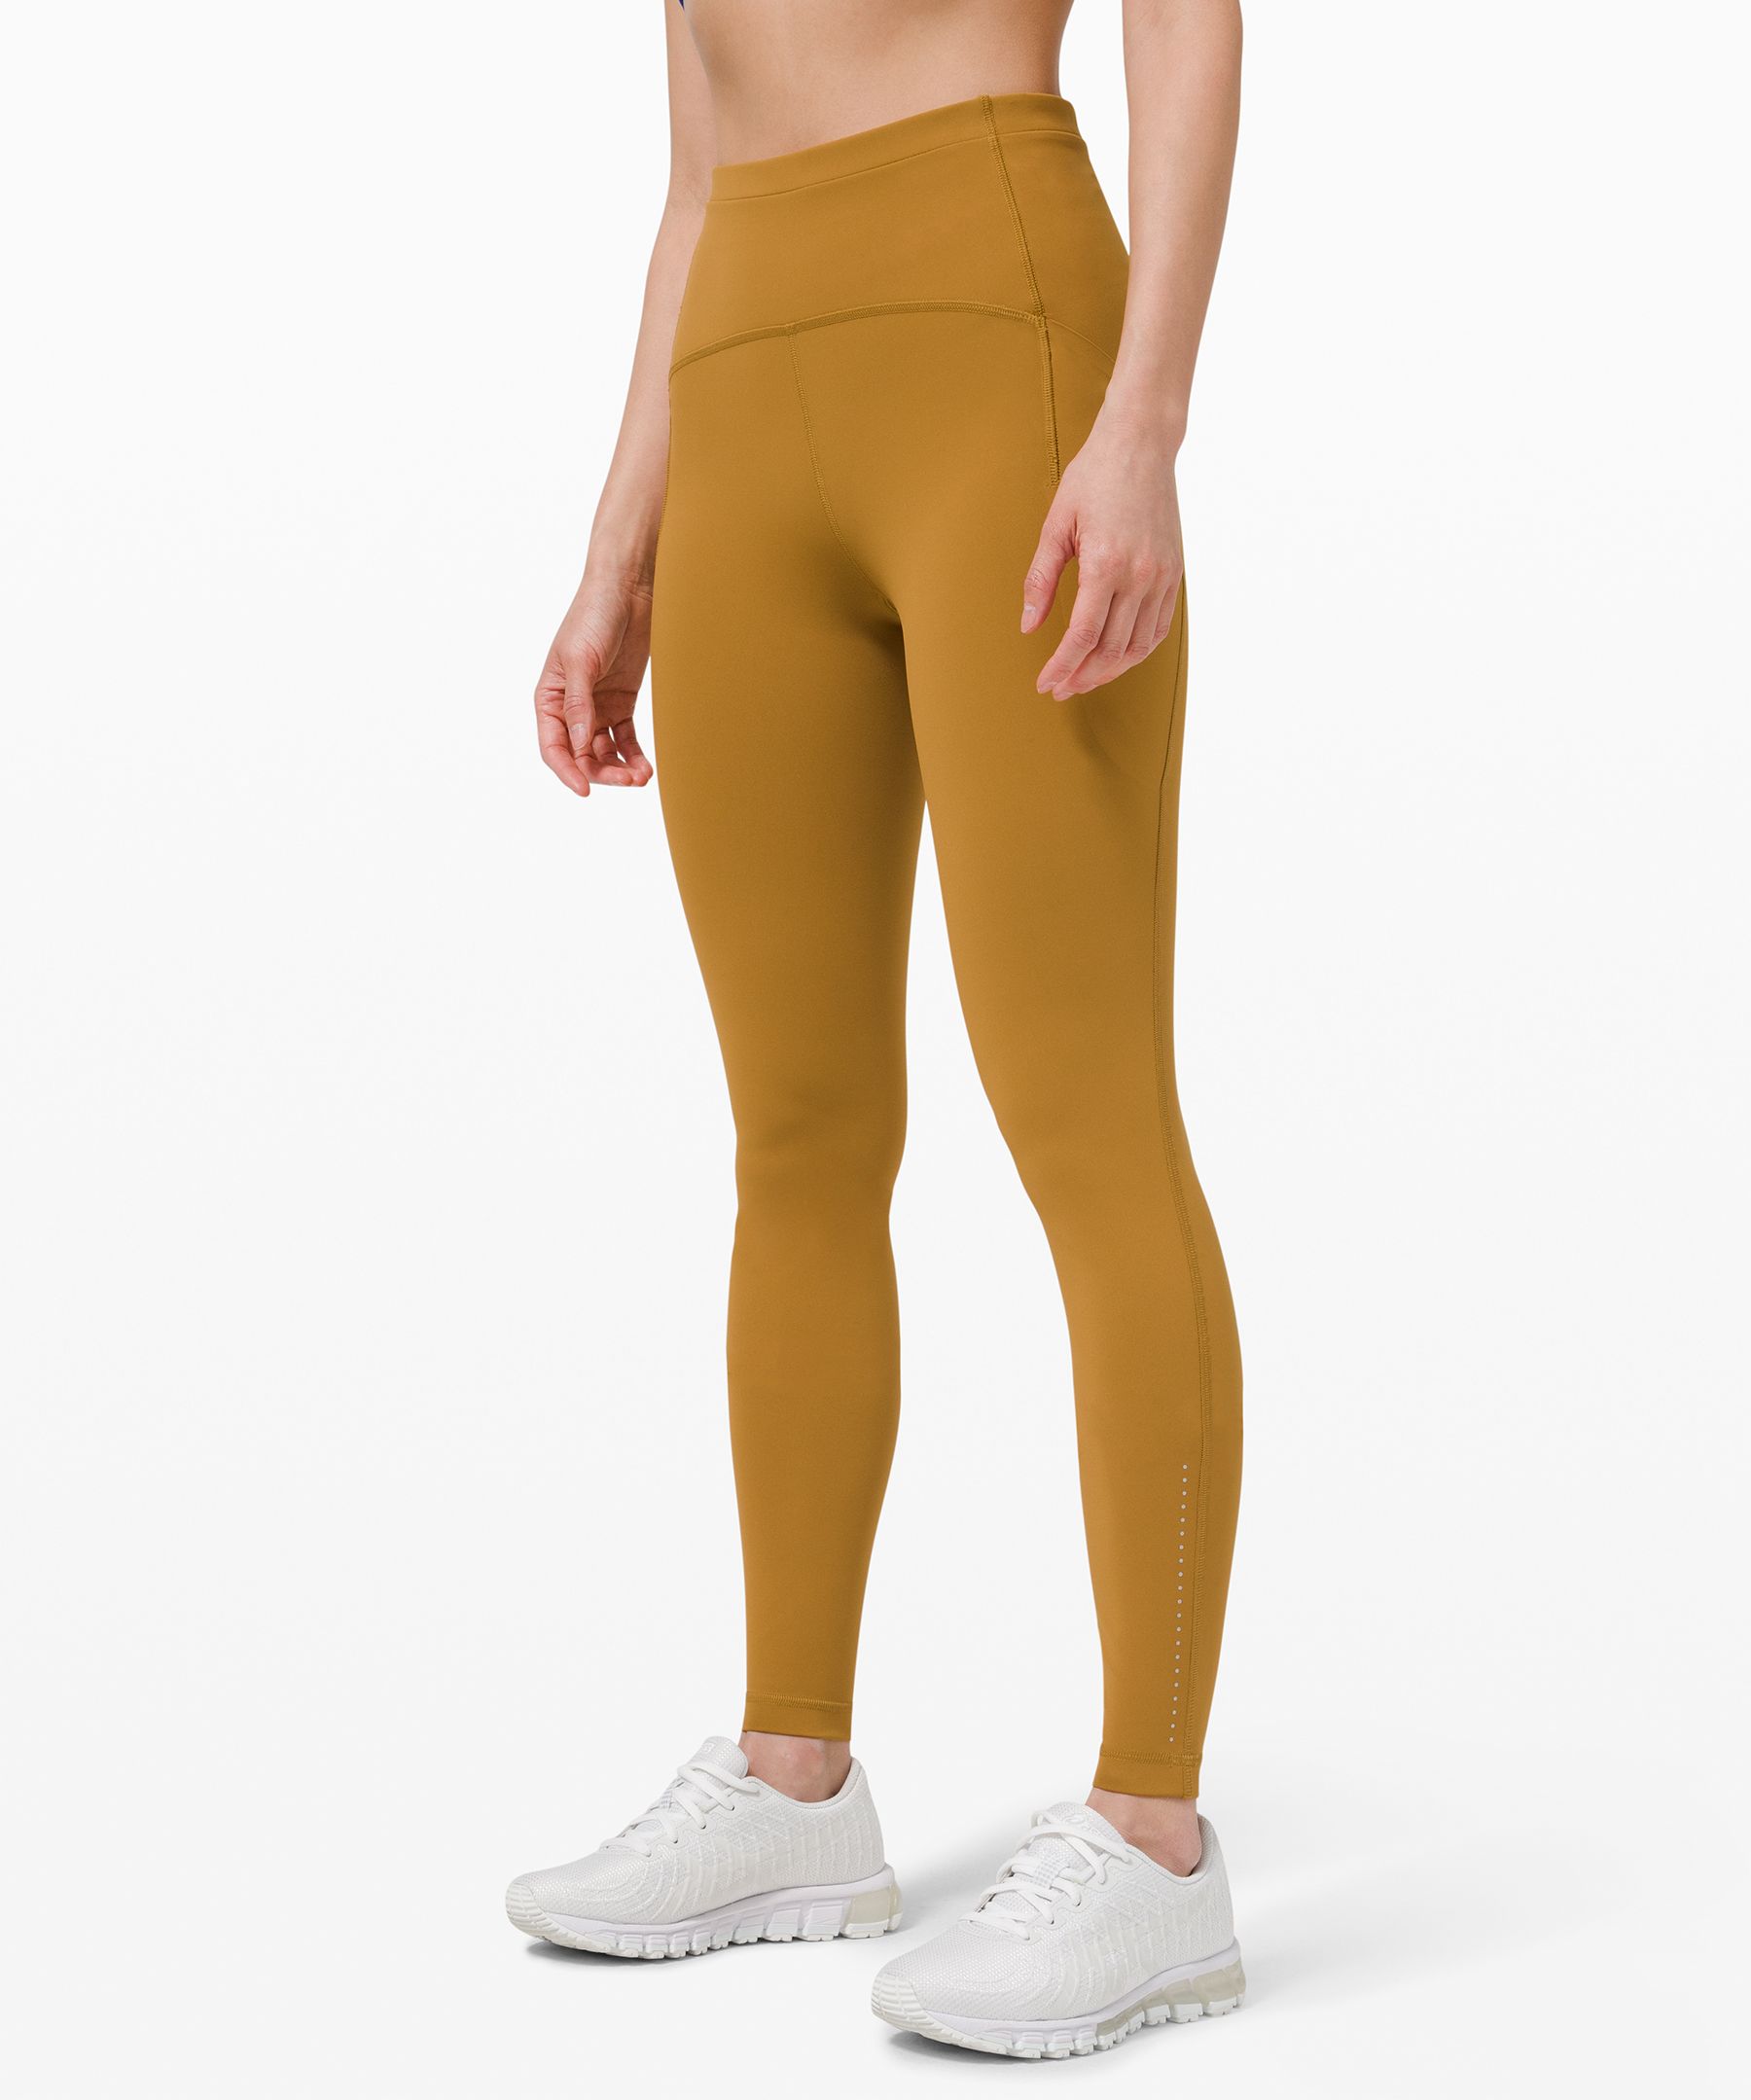 lululemon orange leggings